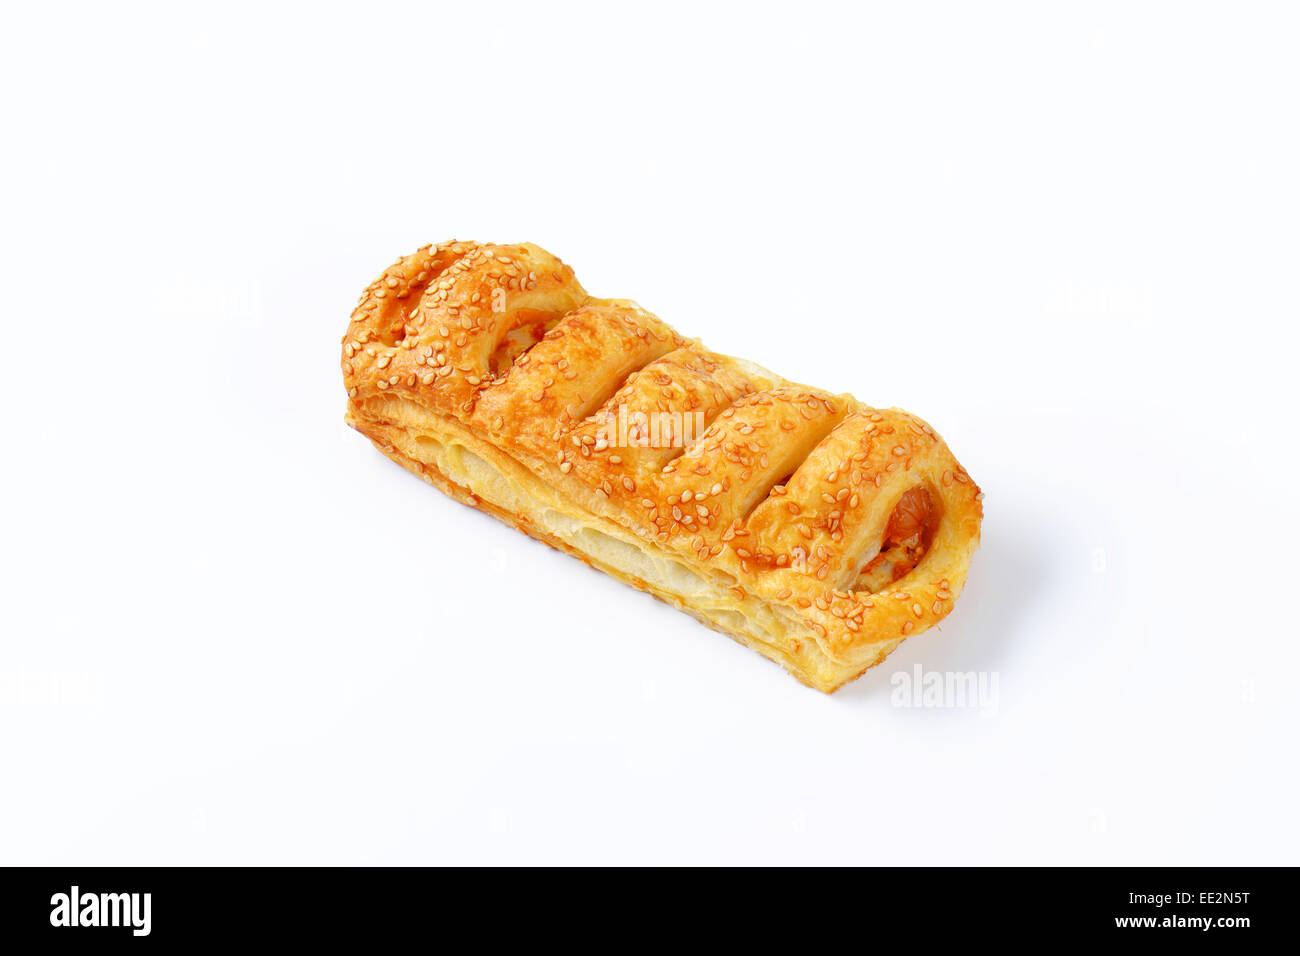 Sausage roll - savoury pastry snack Stock Photo